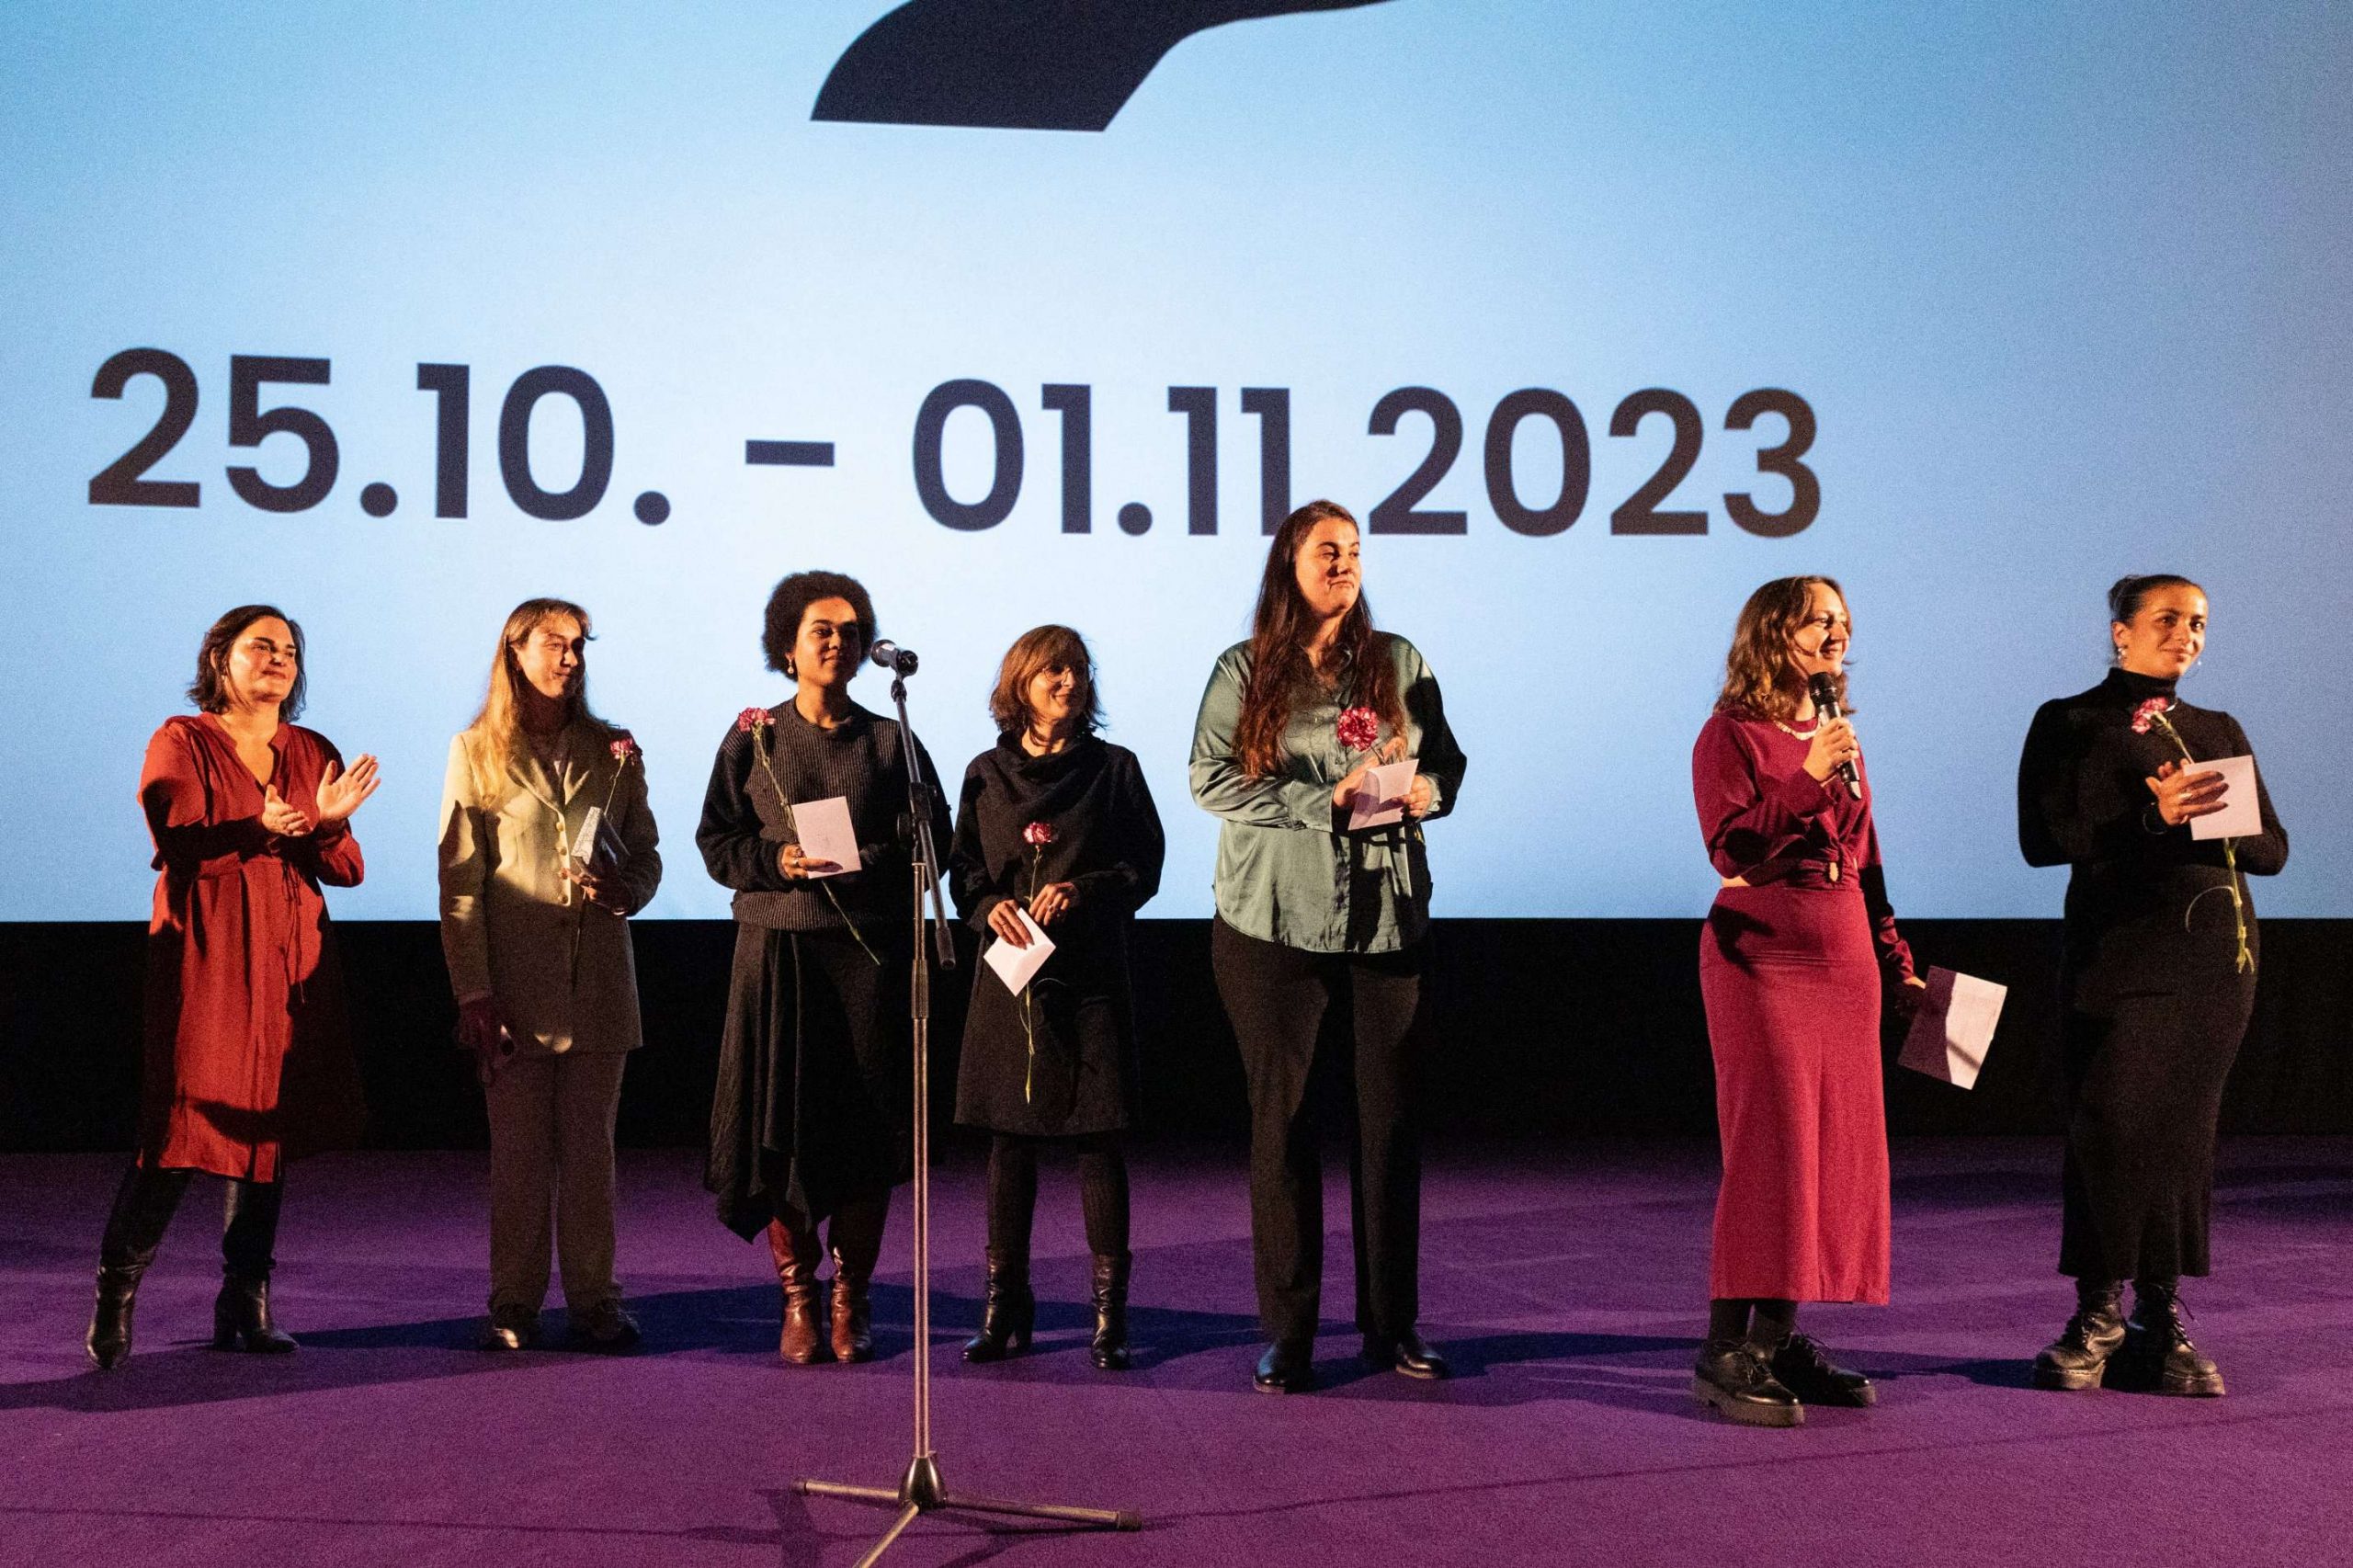 Festivalteam bei der Eröffnung des 23. Filmfests FrauenWelten